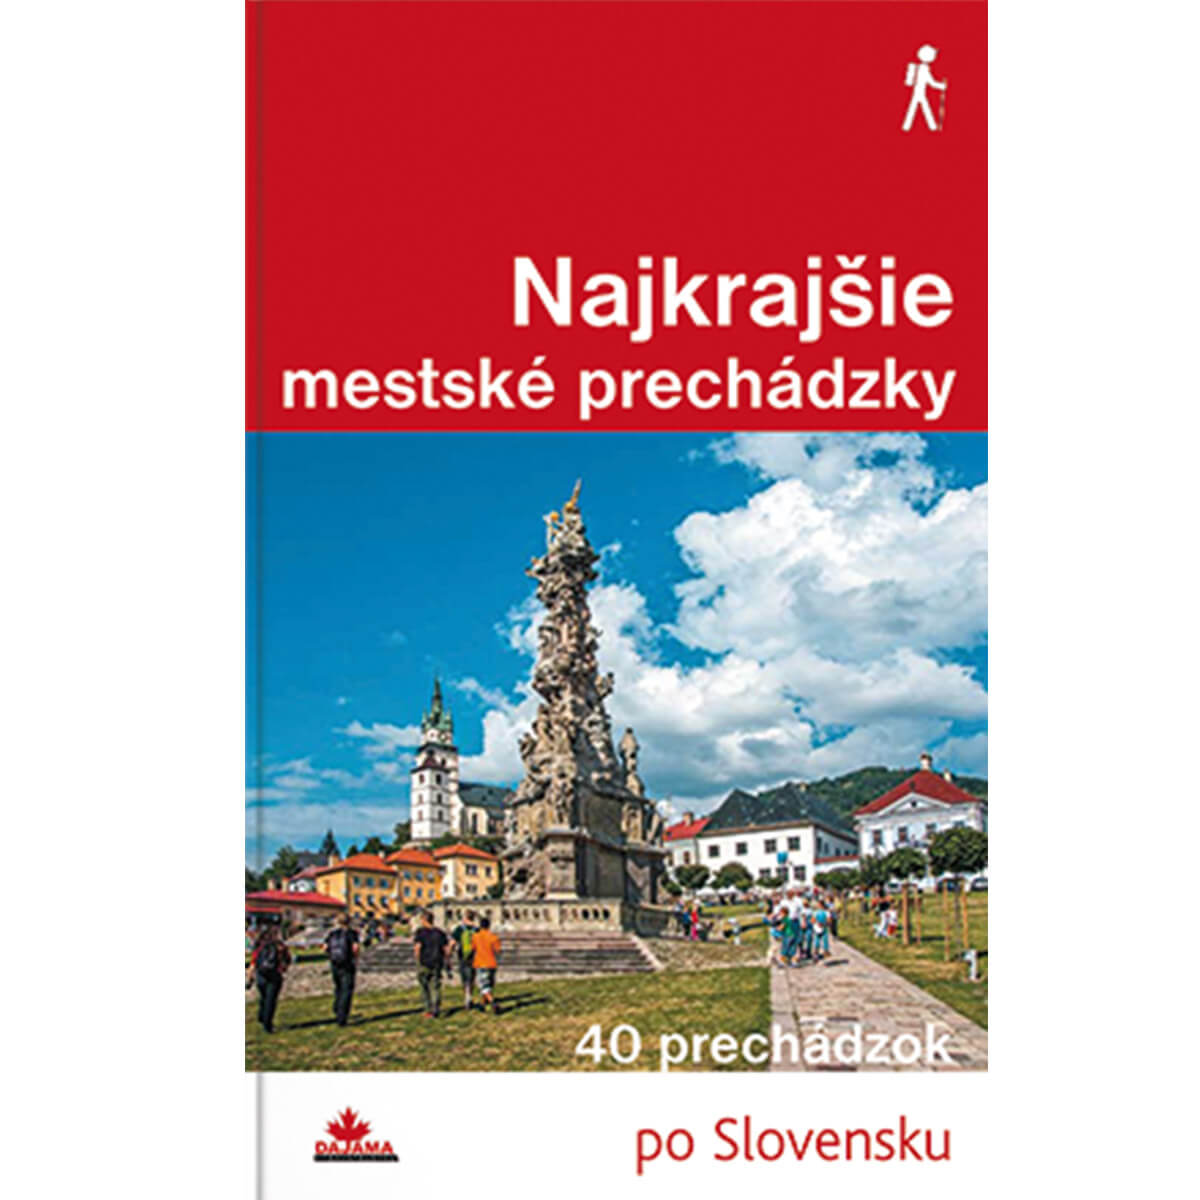 Kniha Najkrajšie mestské prechádzky - 40 prechádzok po Slovensku z vydavateľstva Dajama